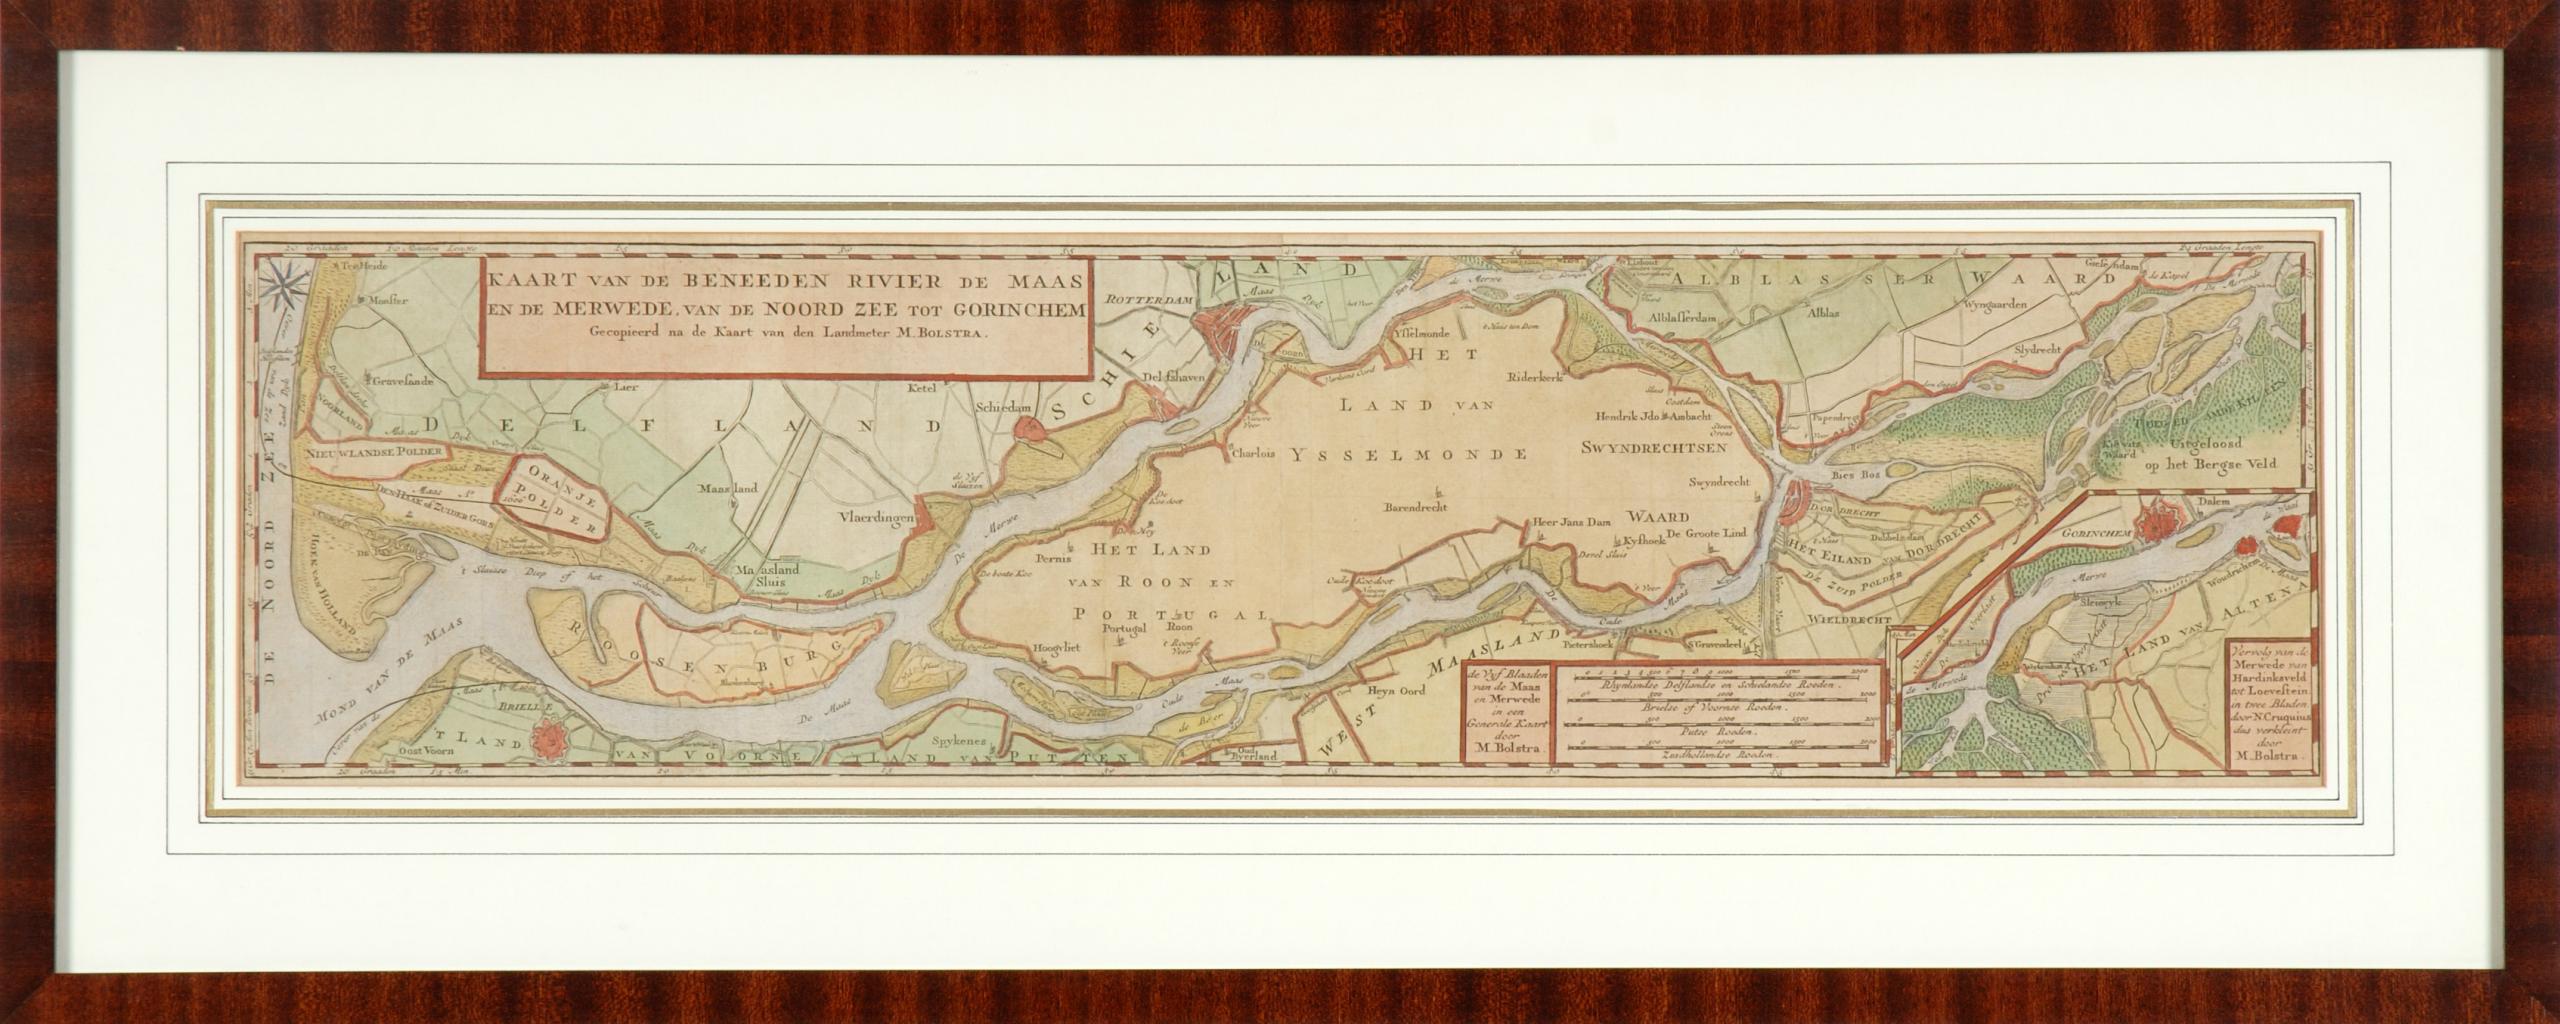 Oude landkaart gemaakt door Melchior Bolstra (na 1741) De titel is: KAART VAN DE BENEEDEN RIVIER DE MAAS EN DE MERWEDE VAN DE NOORDZEE TOT GORINCHEM Gecopieerd na de Kaart van den Landmeter M. Bolstra